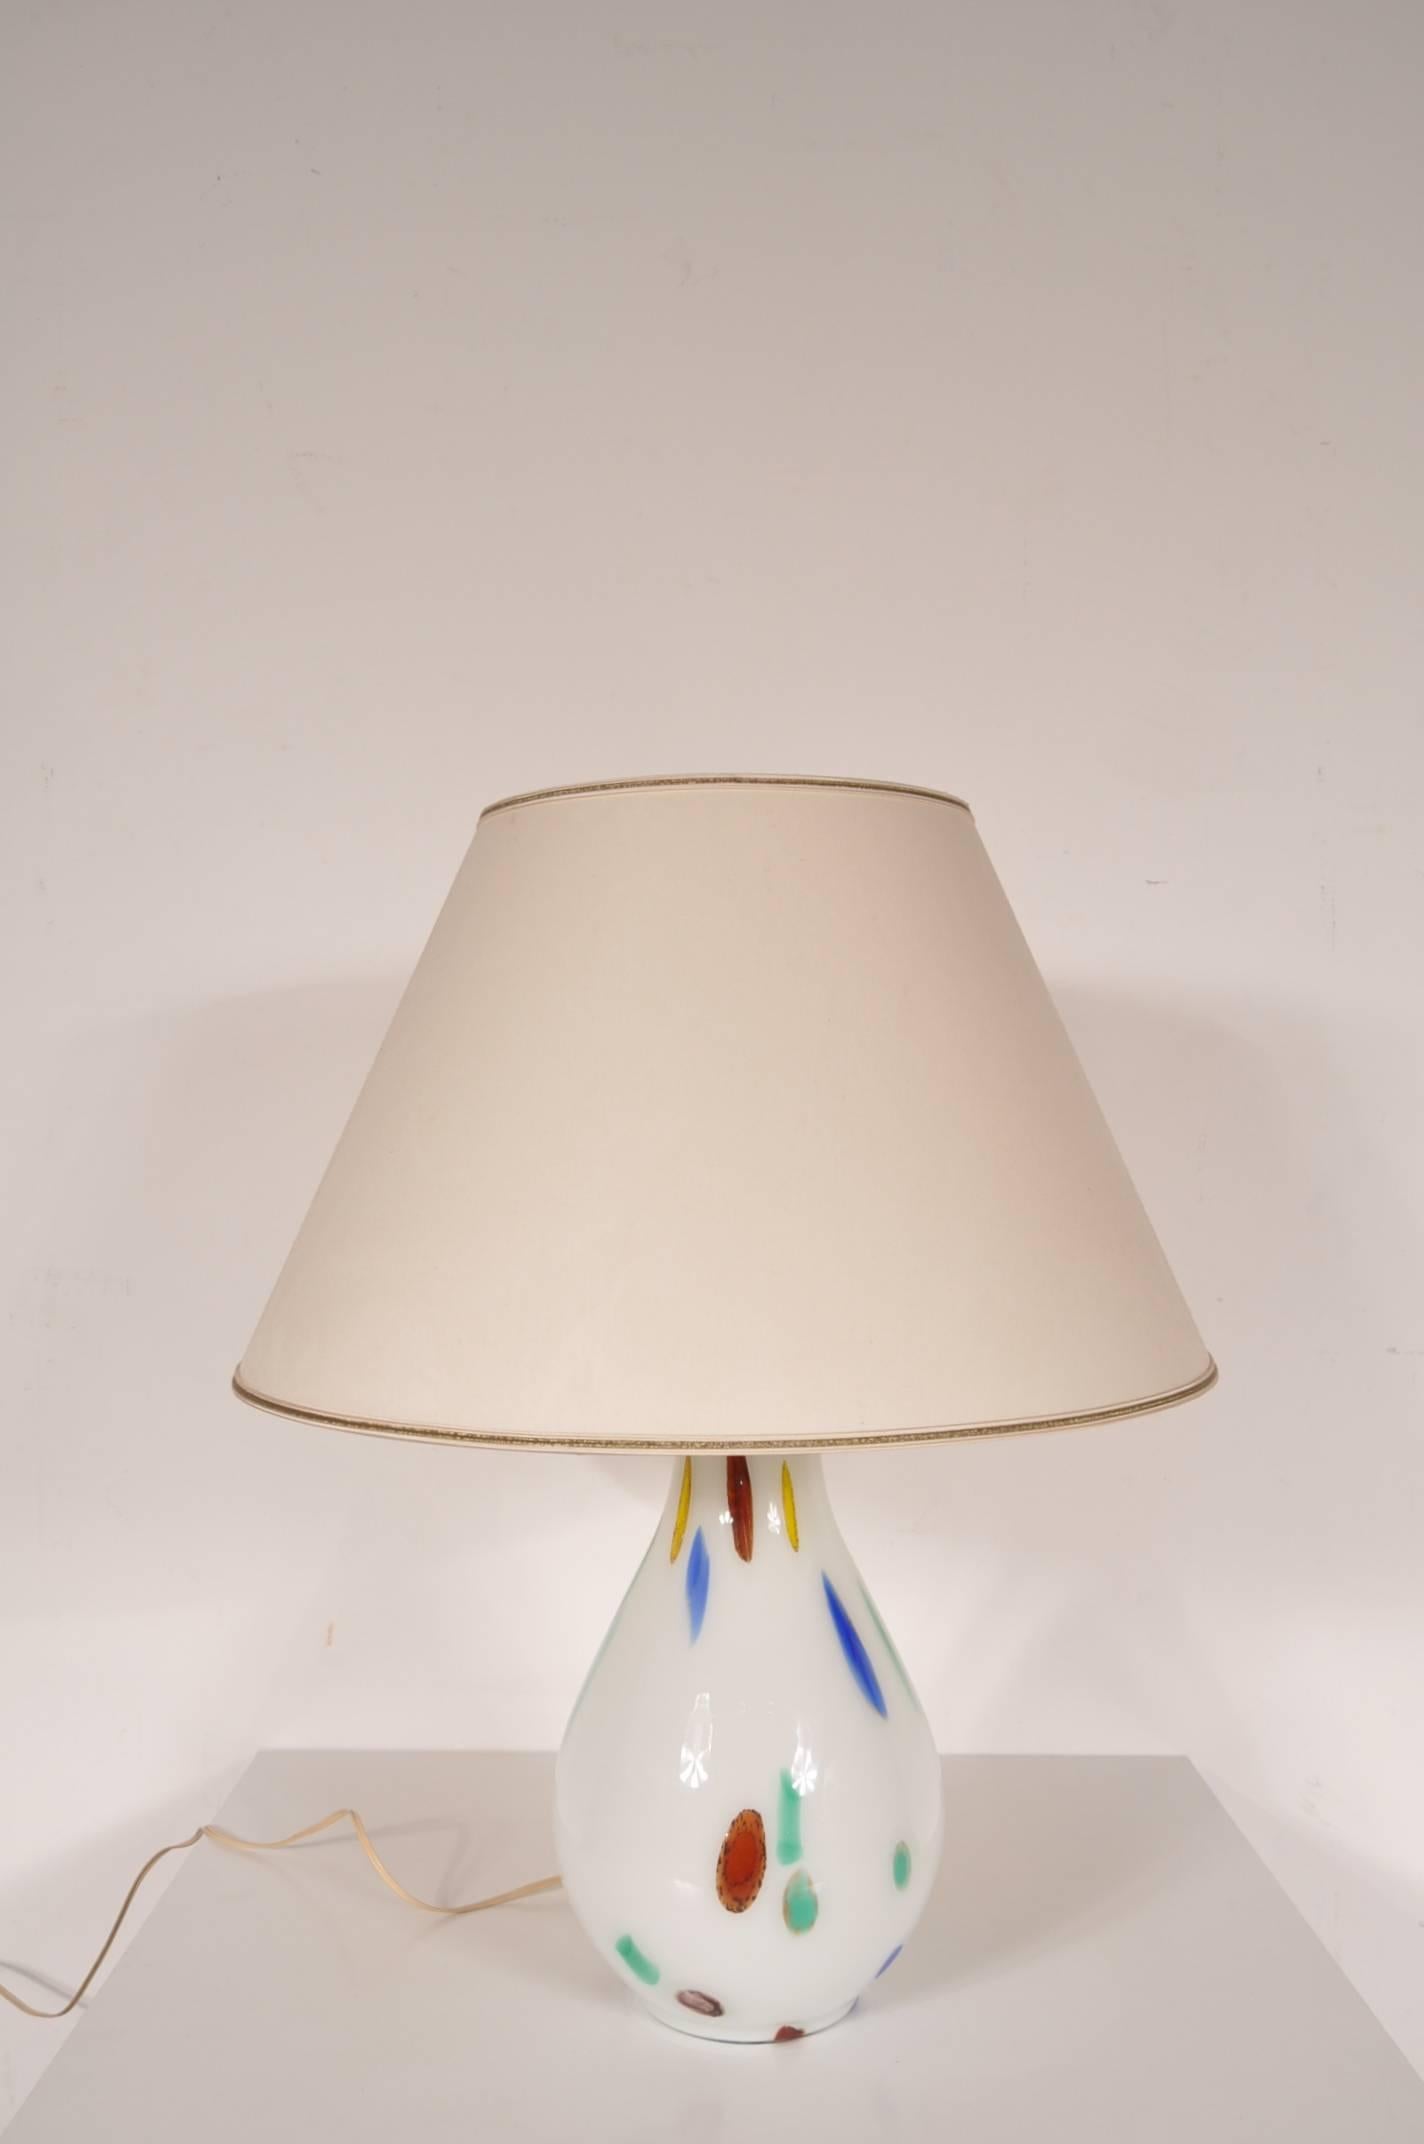 Wunderschöne Tischlampe aus Murano-Glas, entworfen von Dino Martens, hergestellt von Aureliano Toso in Murano, Italien, um 1960.

Dieses große Tischlampenmodell ist ein sehr seltener Fund. Der Sockel aus mundgeblasenem Murano-Glas ist wunderschön